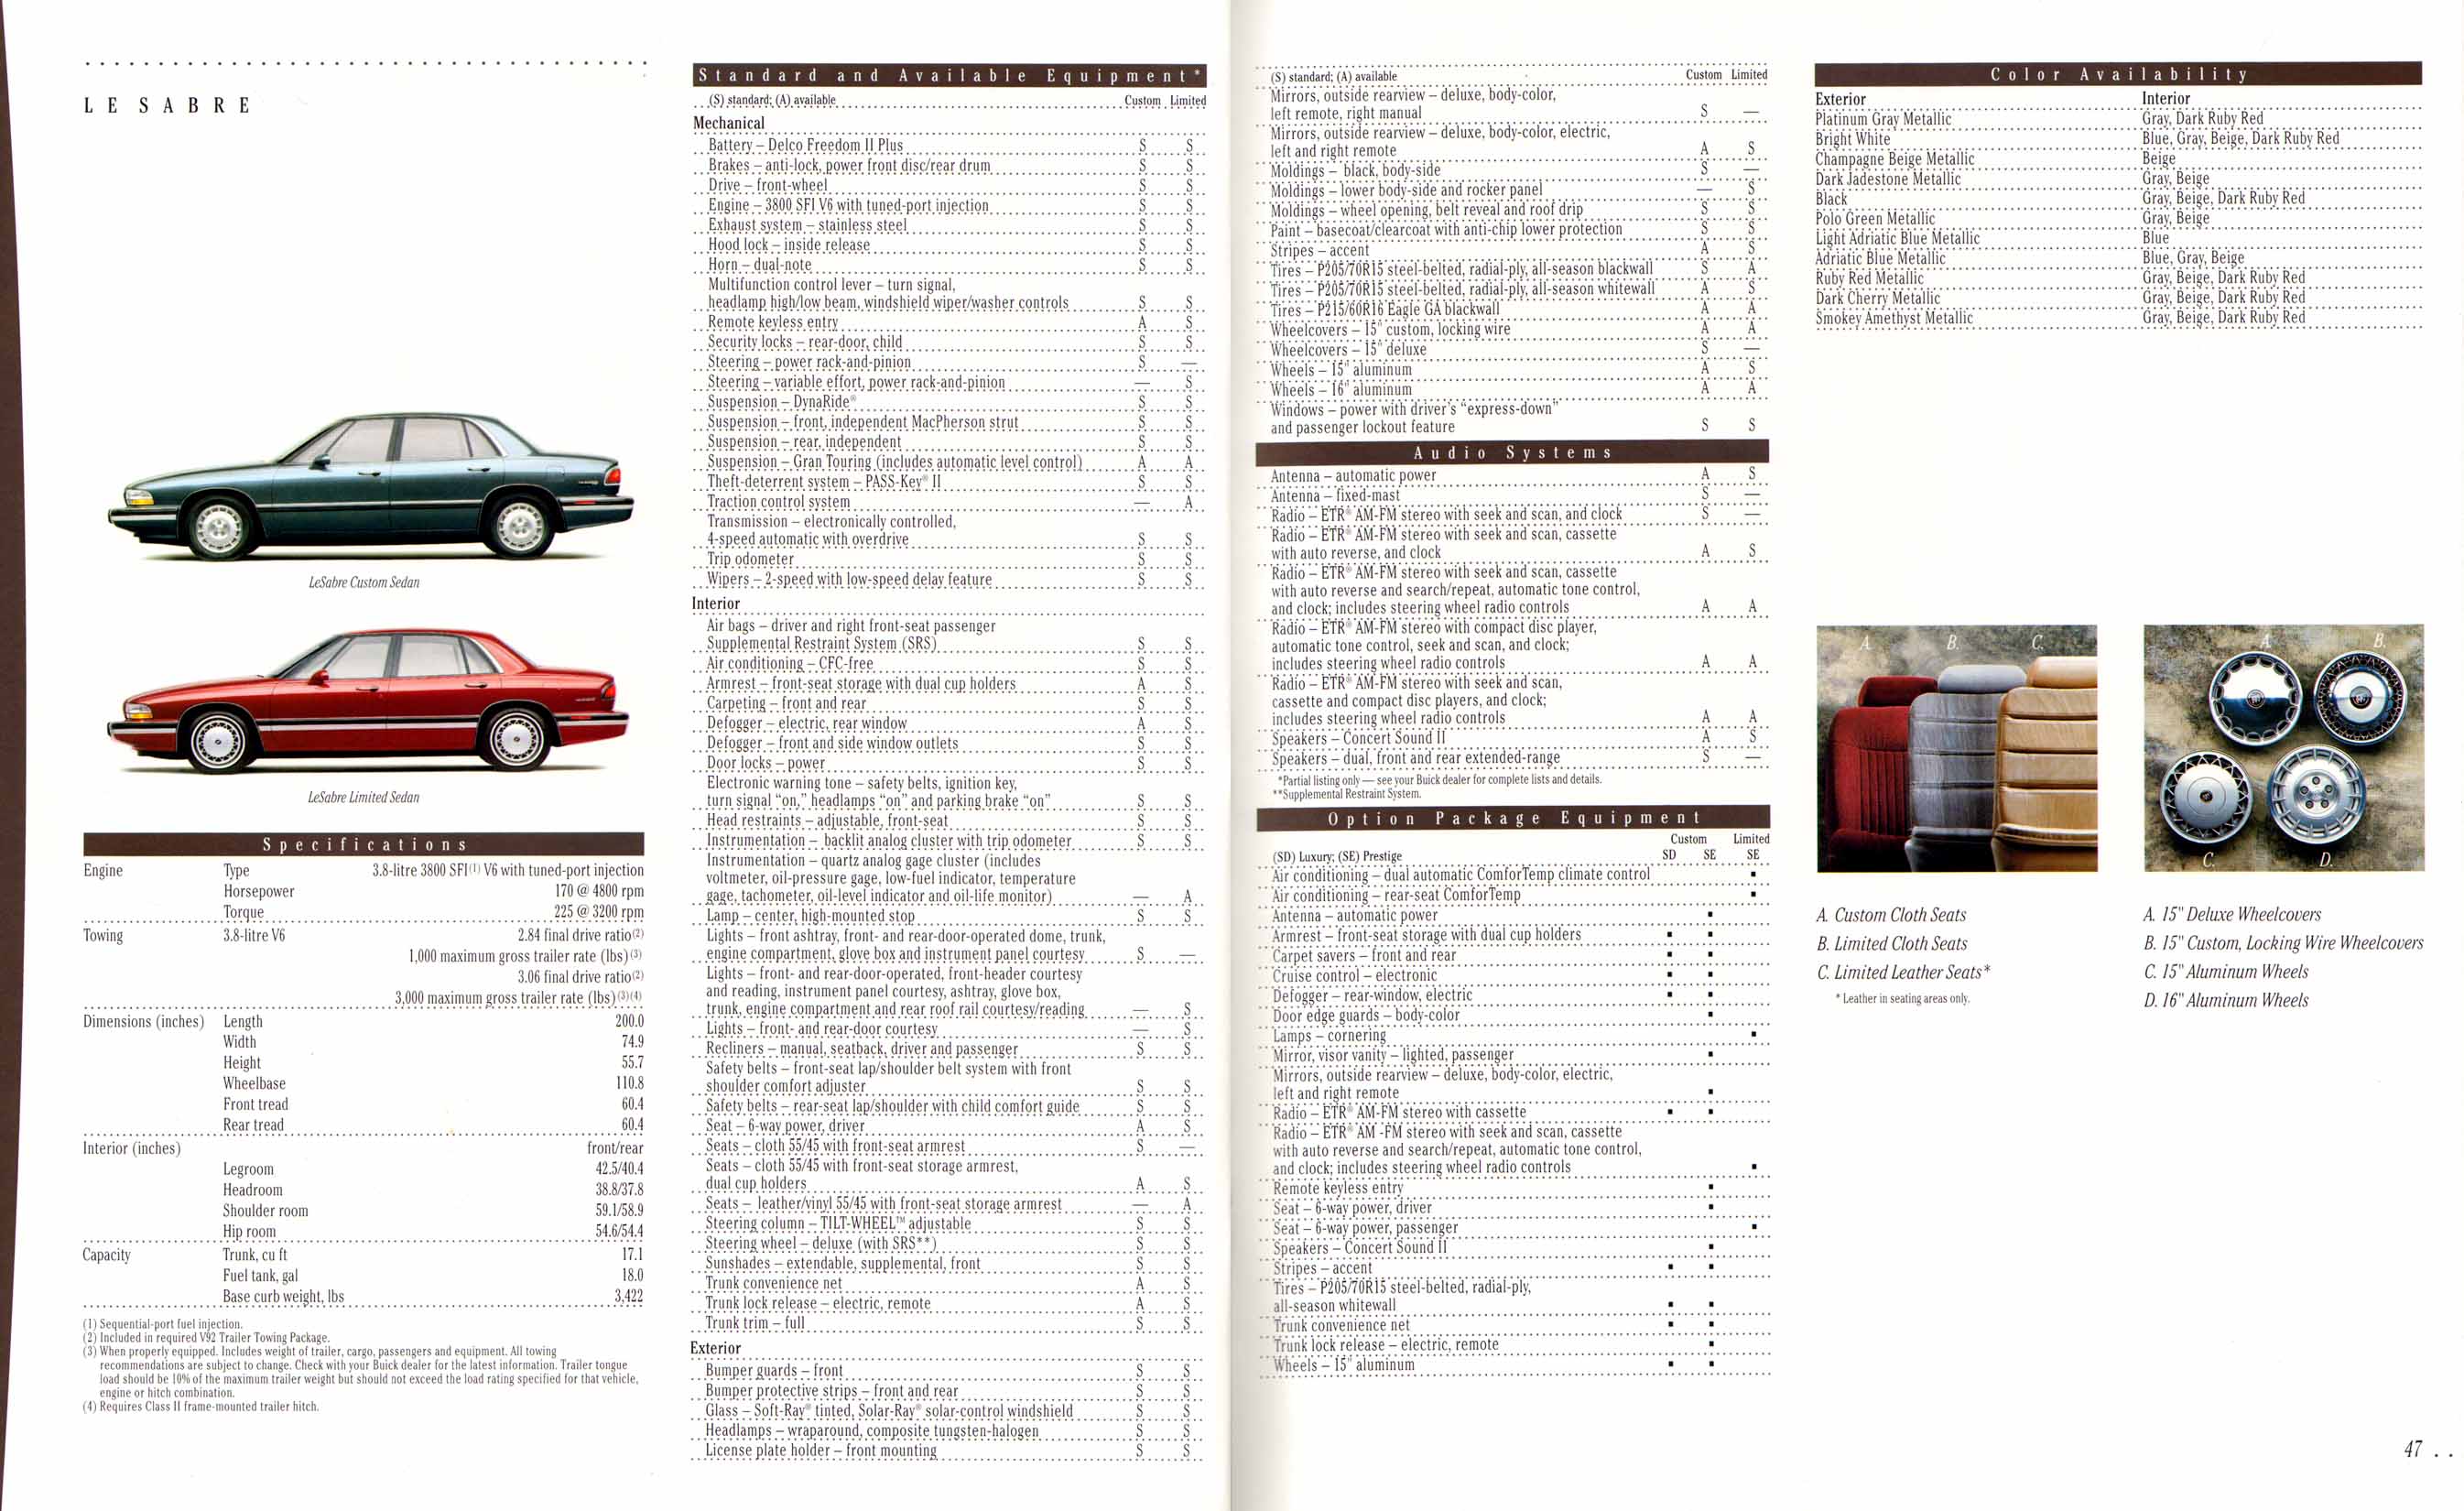 1995 Buick Full Line Prestige-46-47